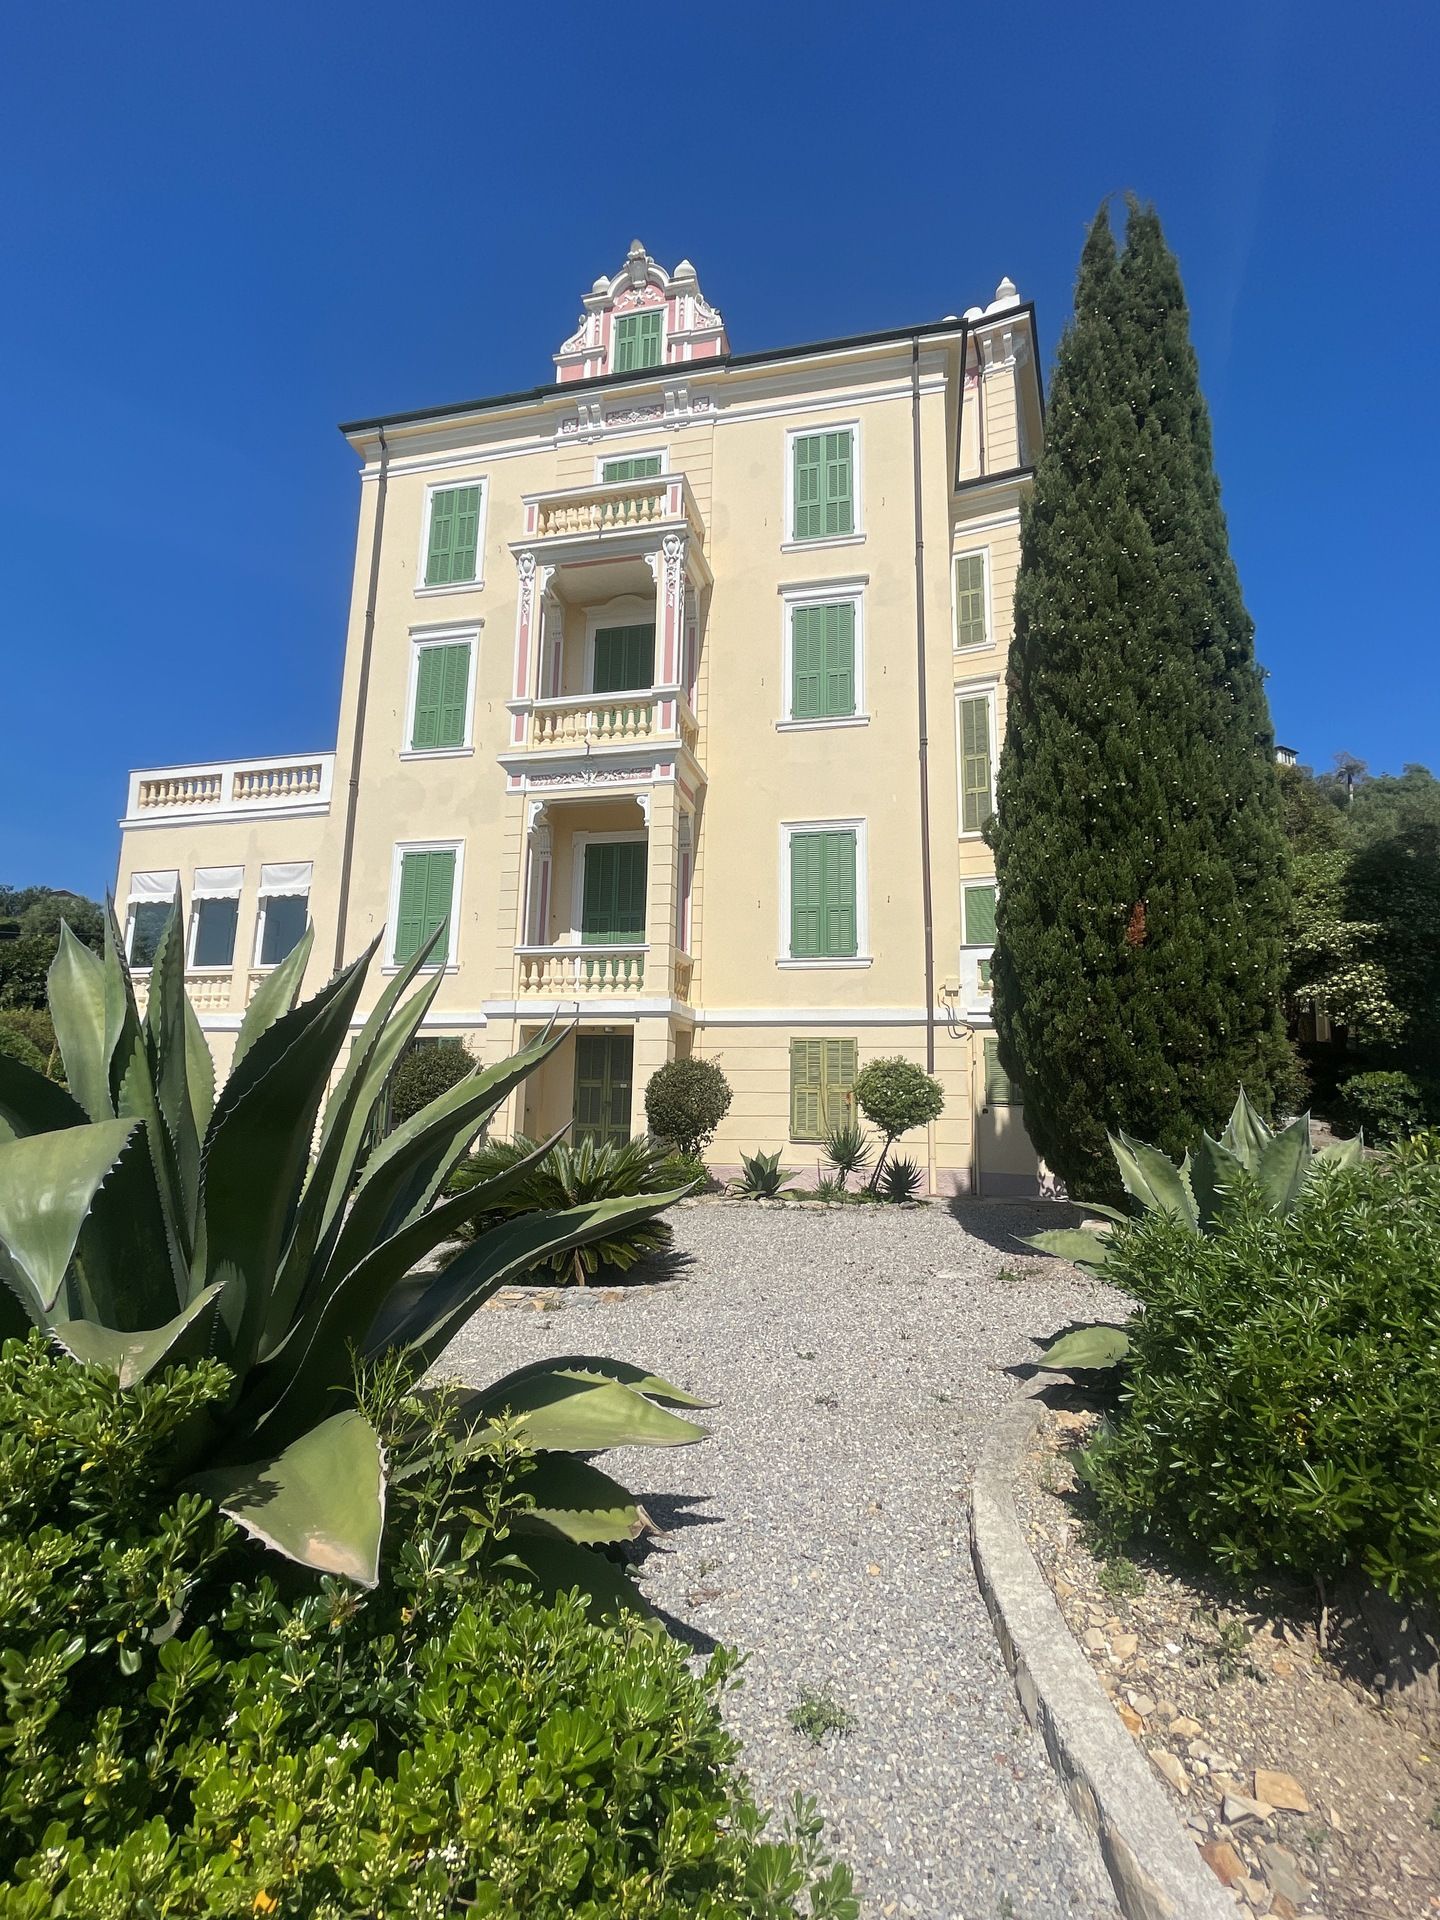 A vendre villa in zone tranquille Bordighera Liguria